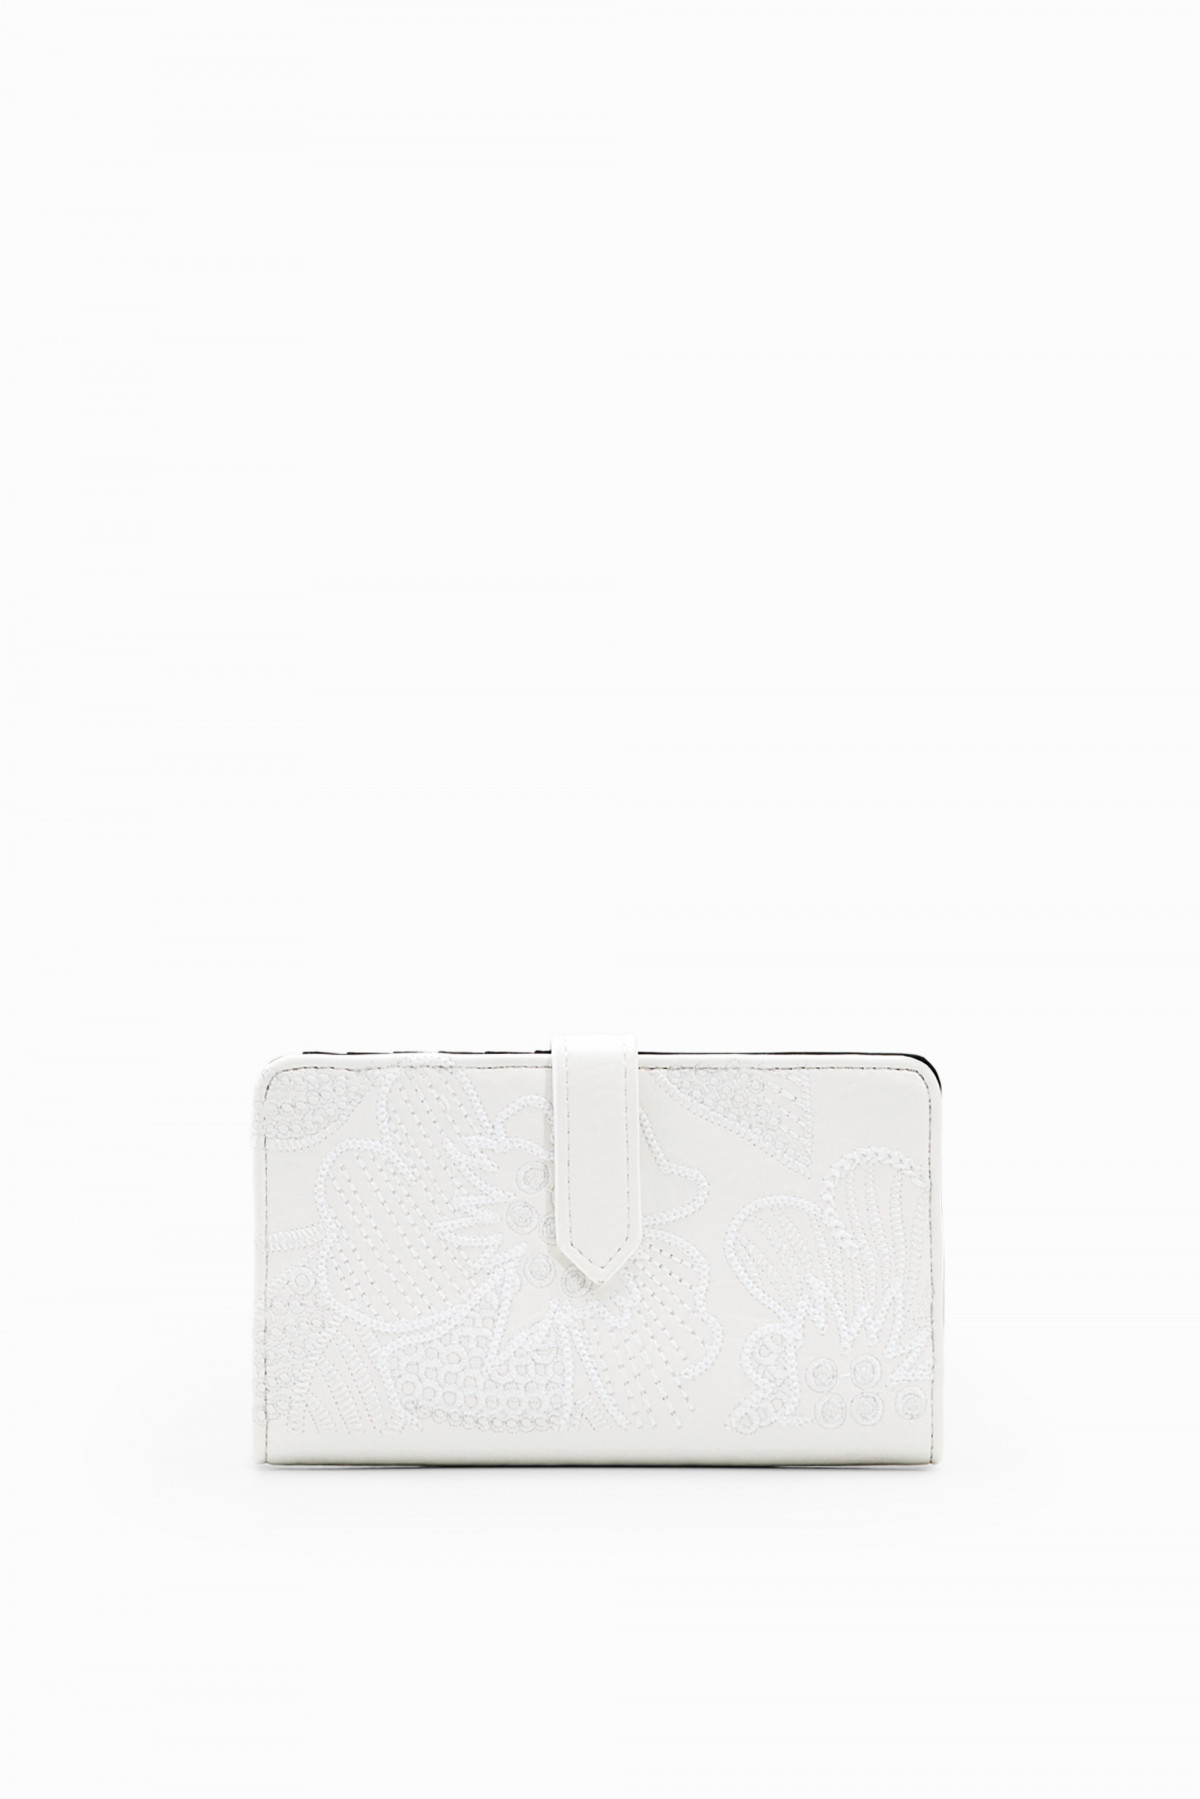 Desigual közepes hímzett pénztárca kapcsos fehér